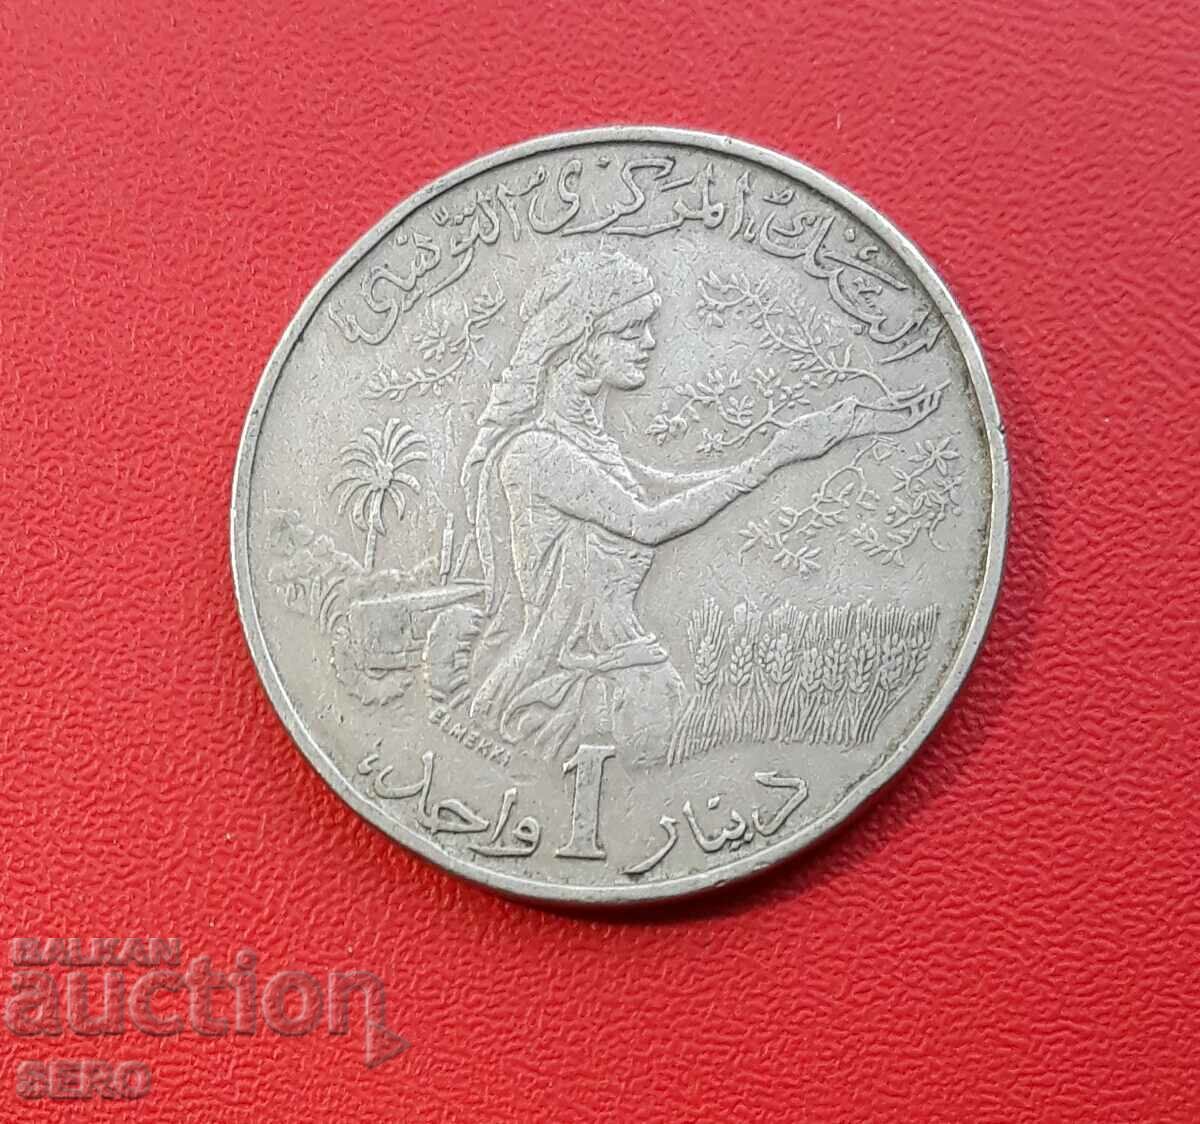 Tunisia-1 dinar 1983